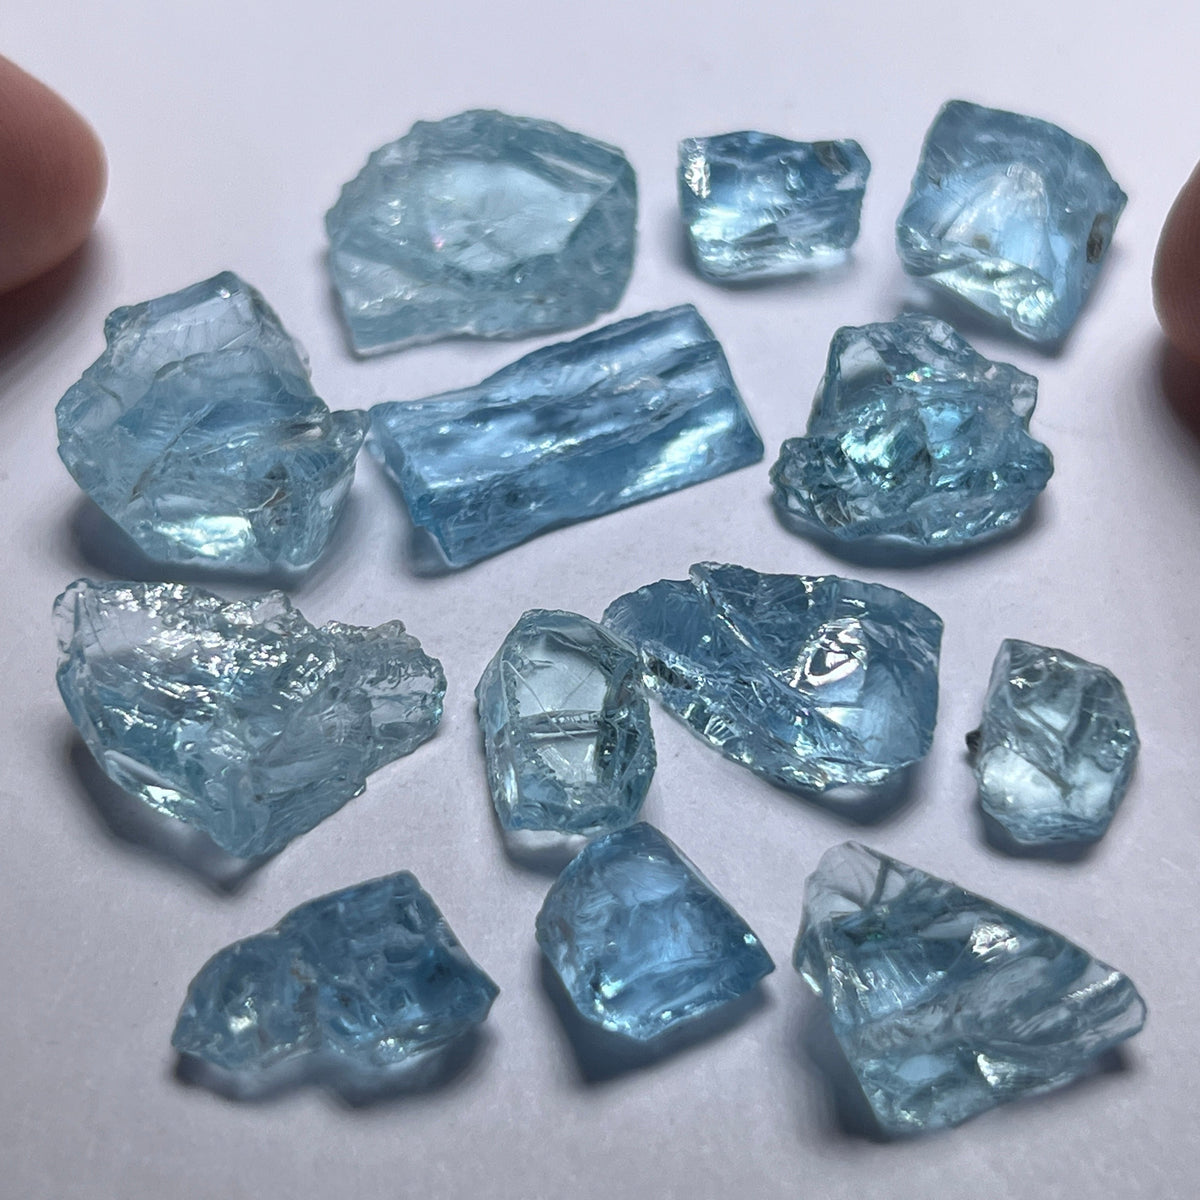 Aquamarine - Stones with Inclusions